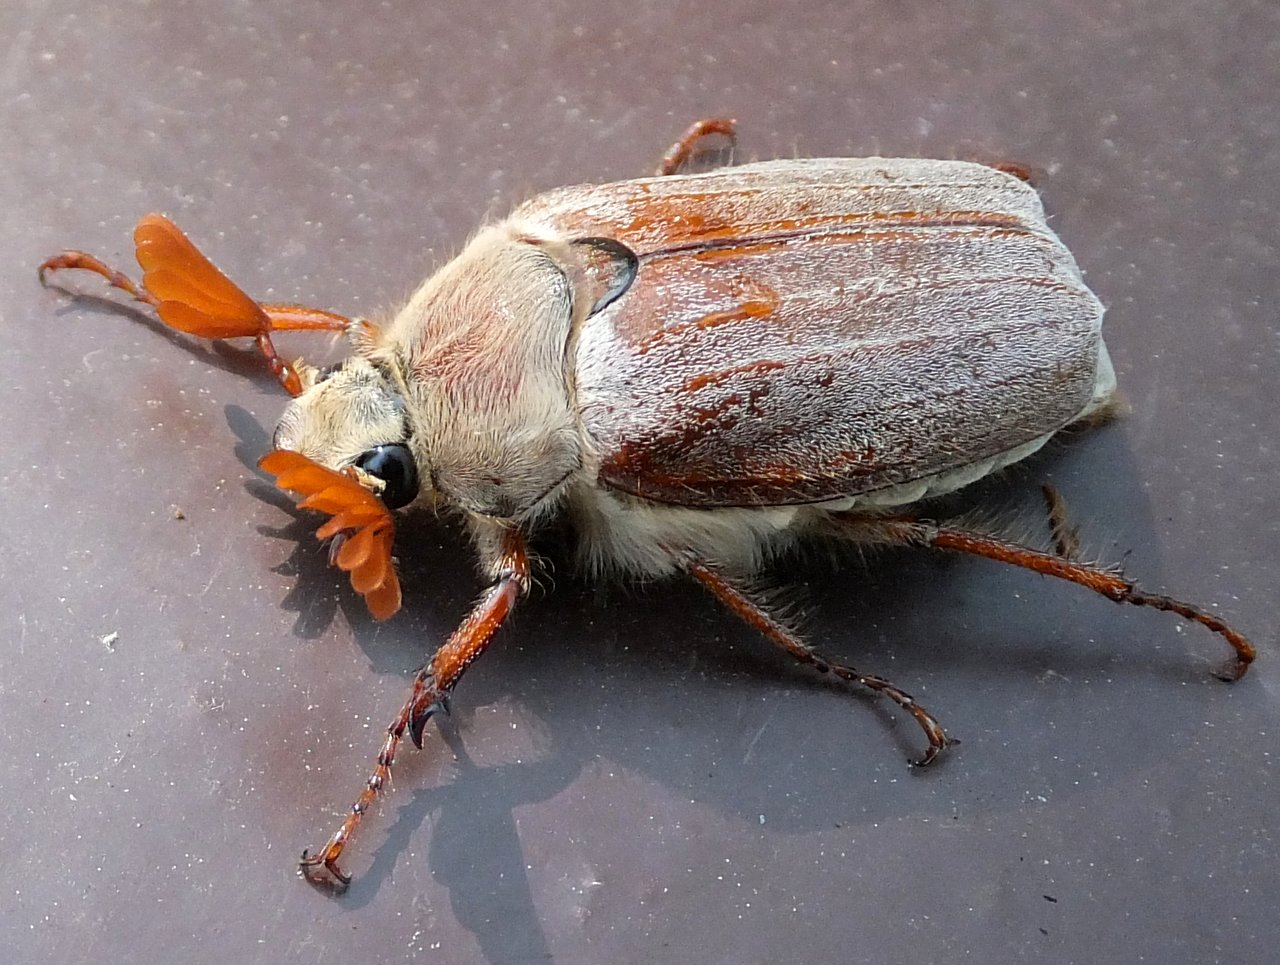 Хрущ, или майский жук — как бороться с вредителем?